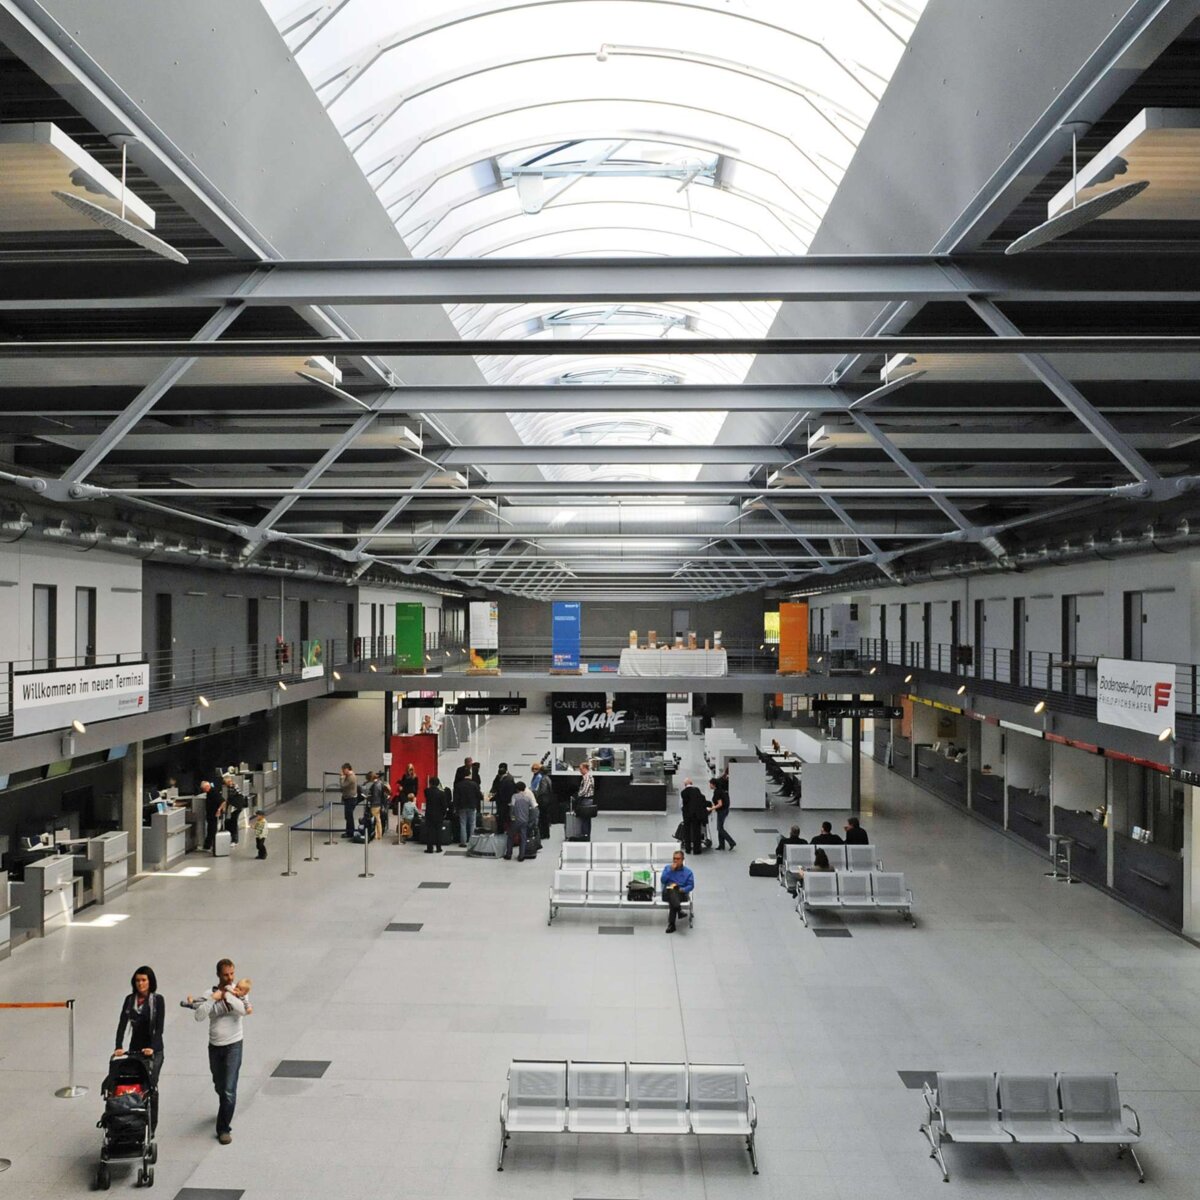 Bodensee-Havalimanı Friedrichshafen | Friedrichshafen • Friedrichshafen havalimanı terminalinin yeni binasında gün ışığının optimum kullanımı